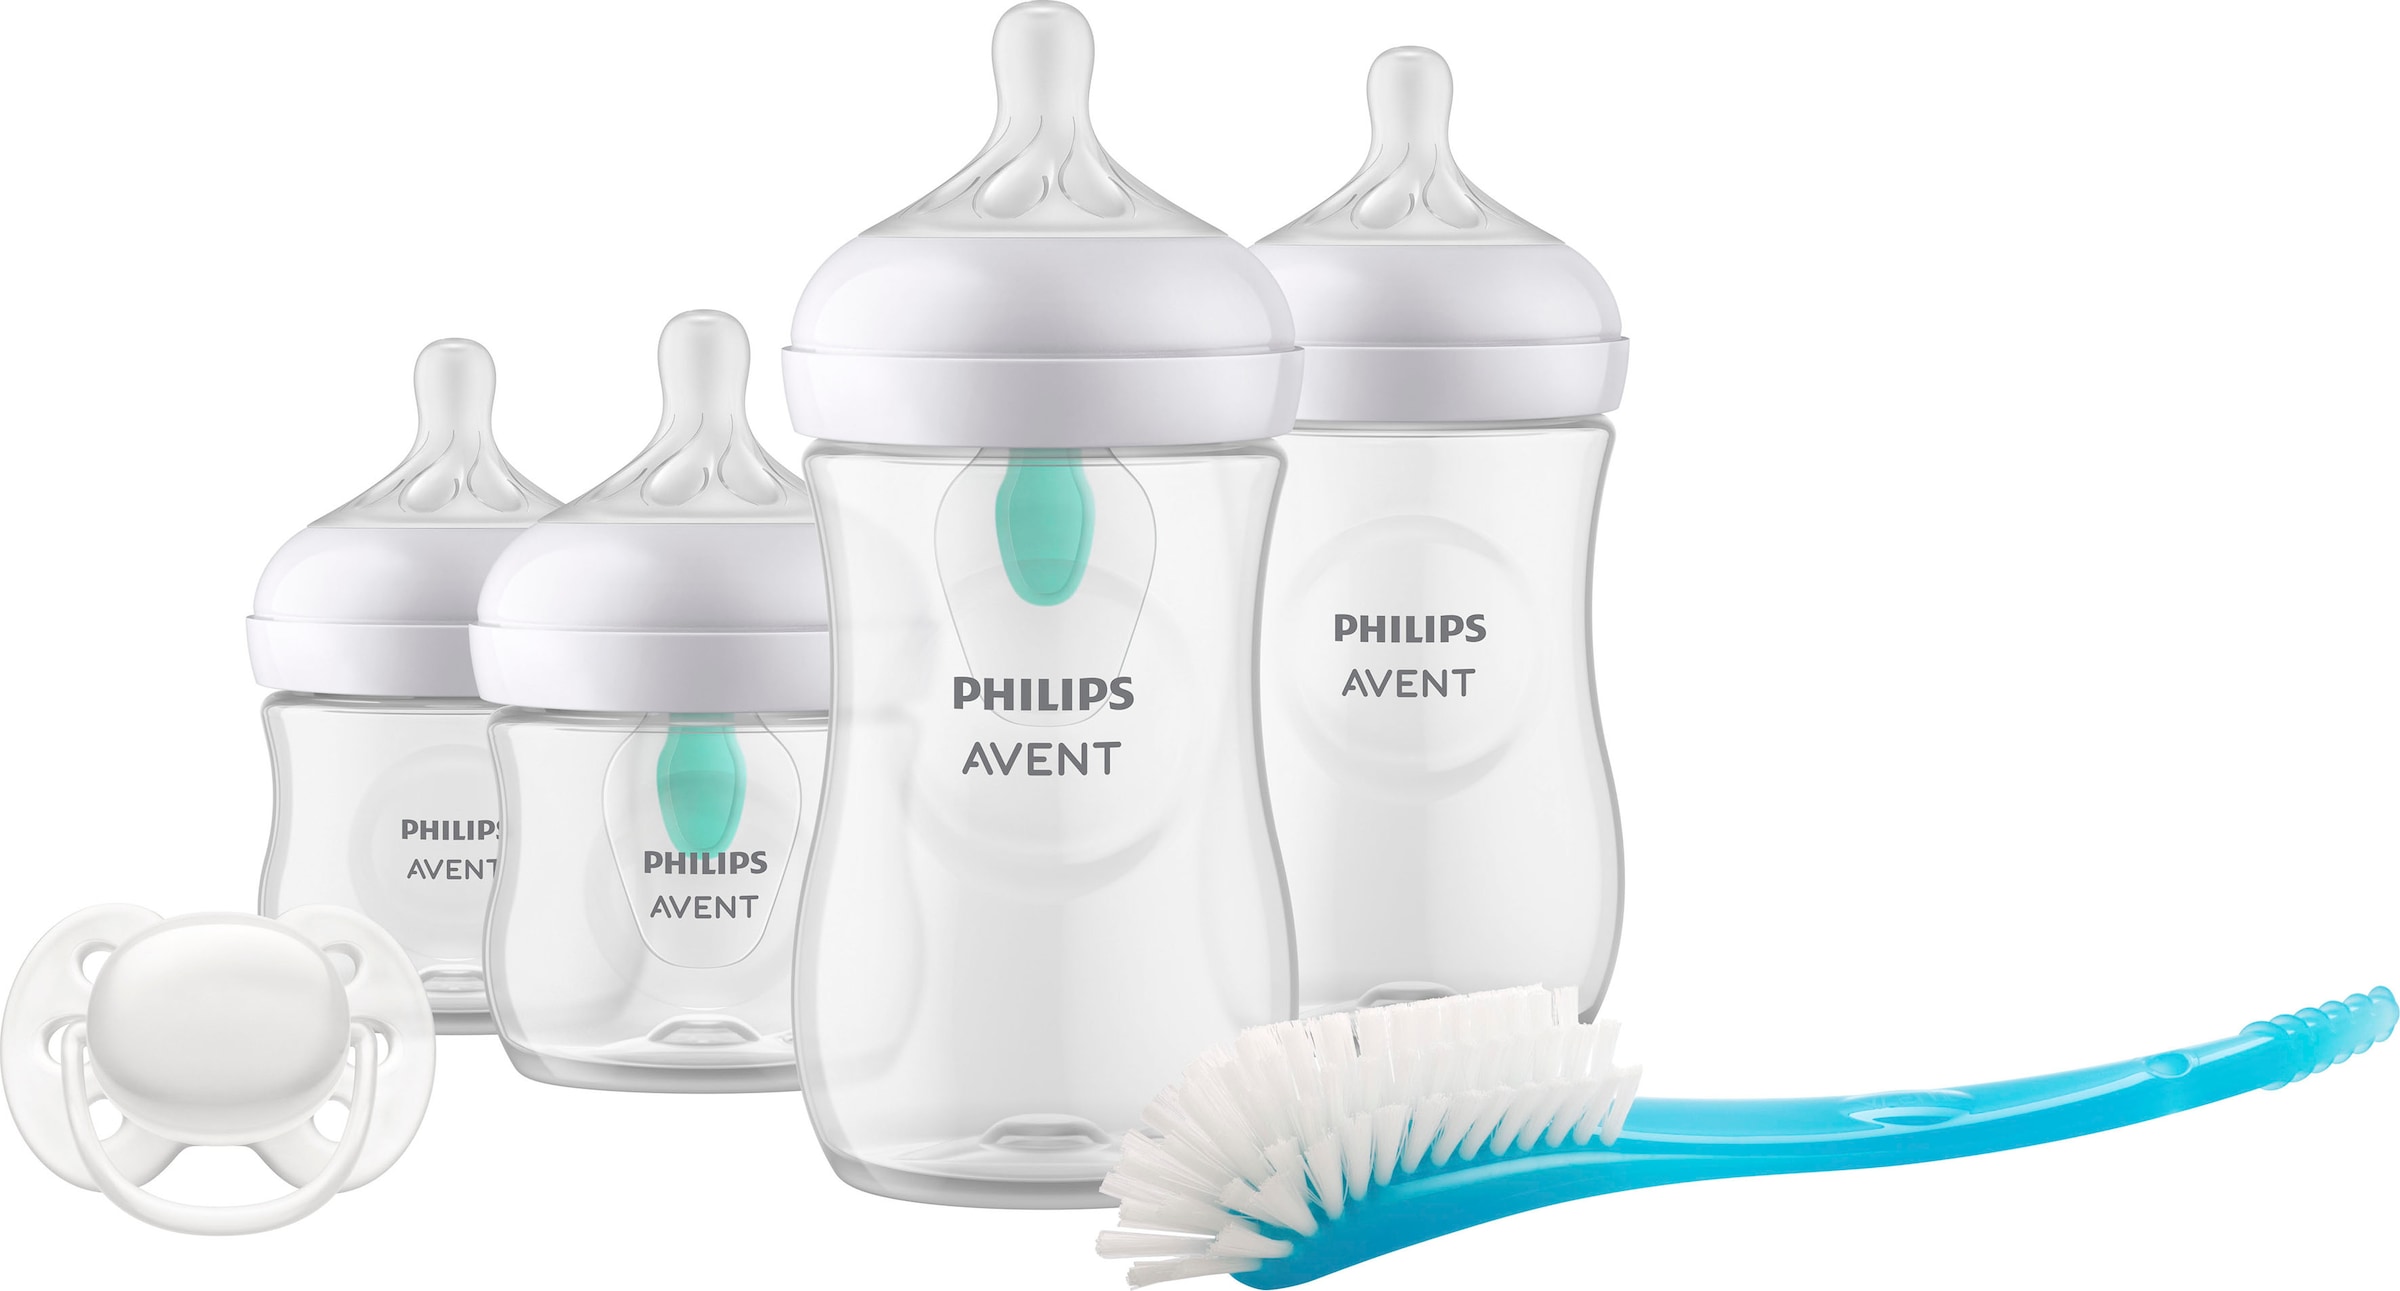 Philips AVENT Babyflasche »Natural Response Flaschen-Set Air-Free Ventil SCD657/11«, 4 Flaschen mit AirFree-Ventil, ultra soft Schnuller, Flaschenbürste